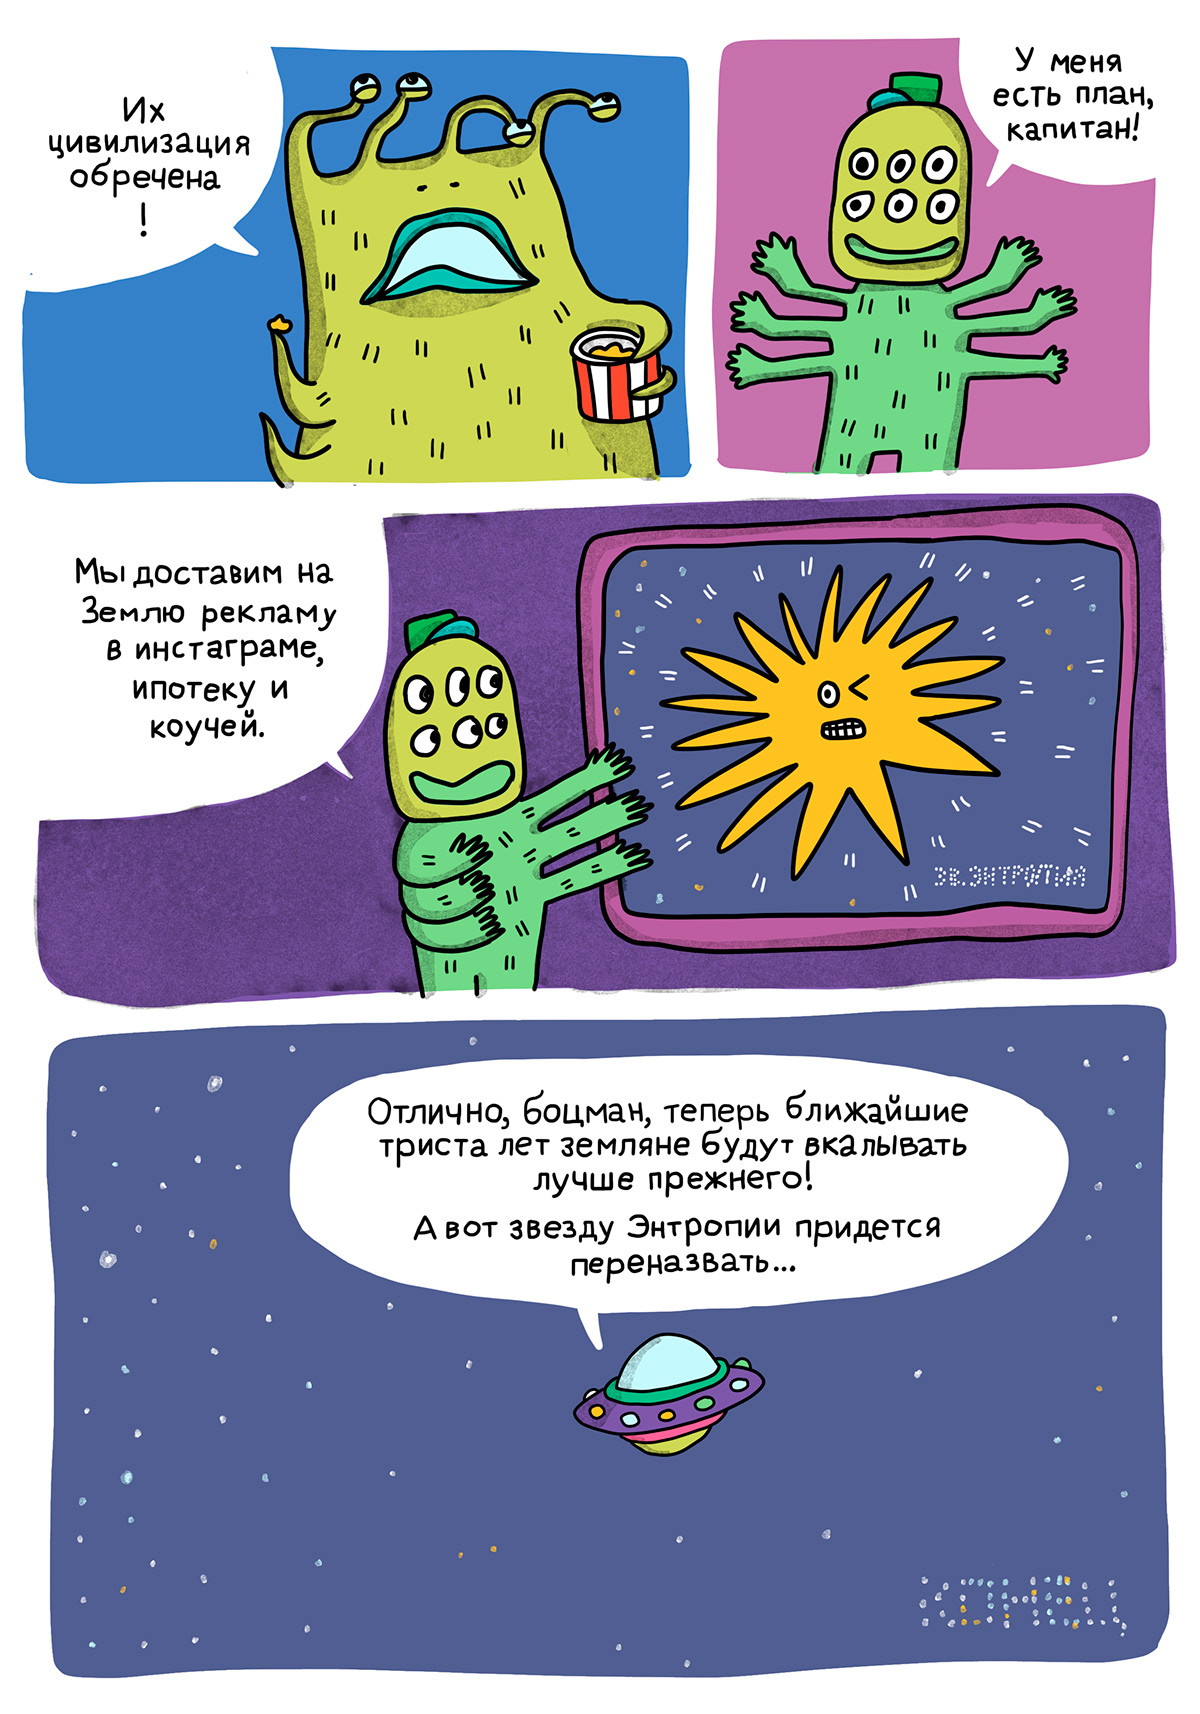 alien cartoon comics Comix Digital Art  funny